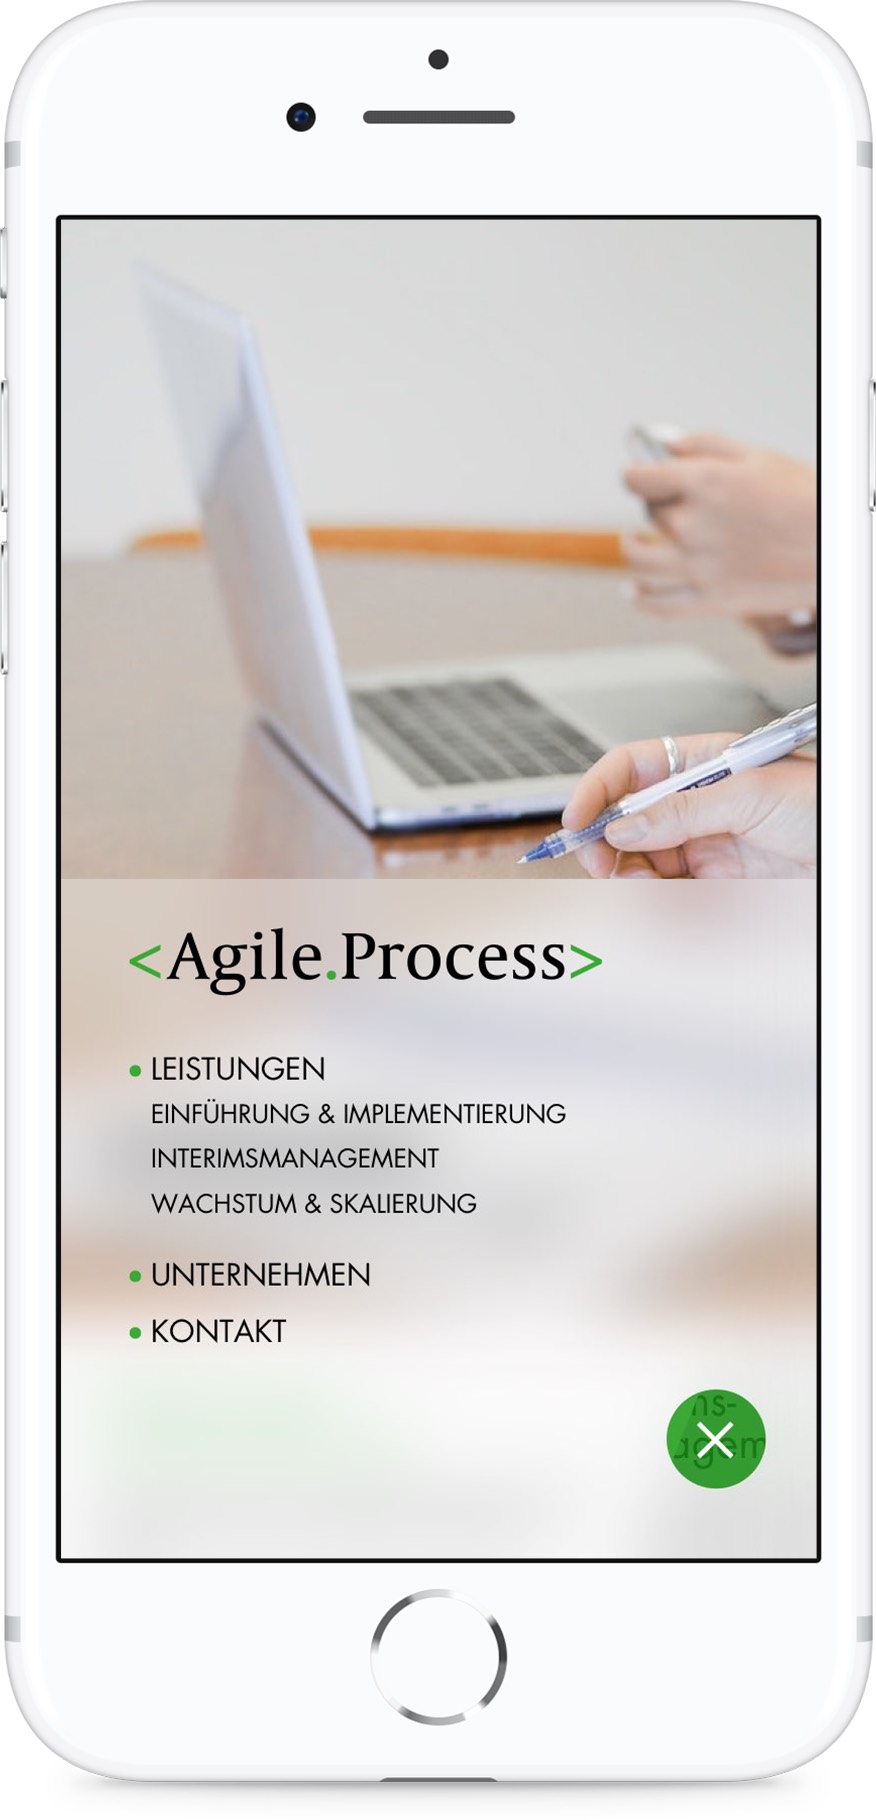 agile-process-ui-5